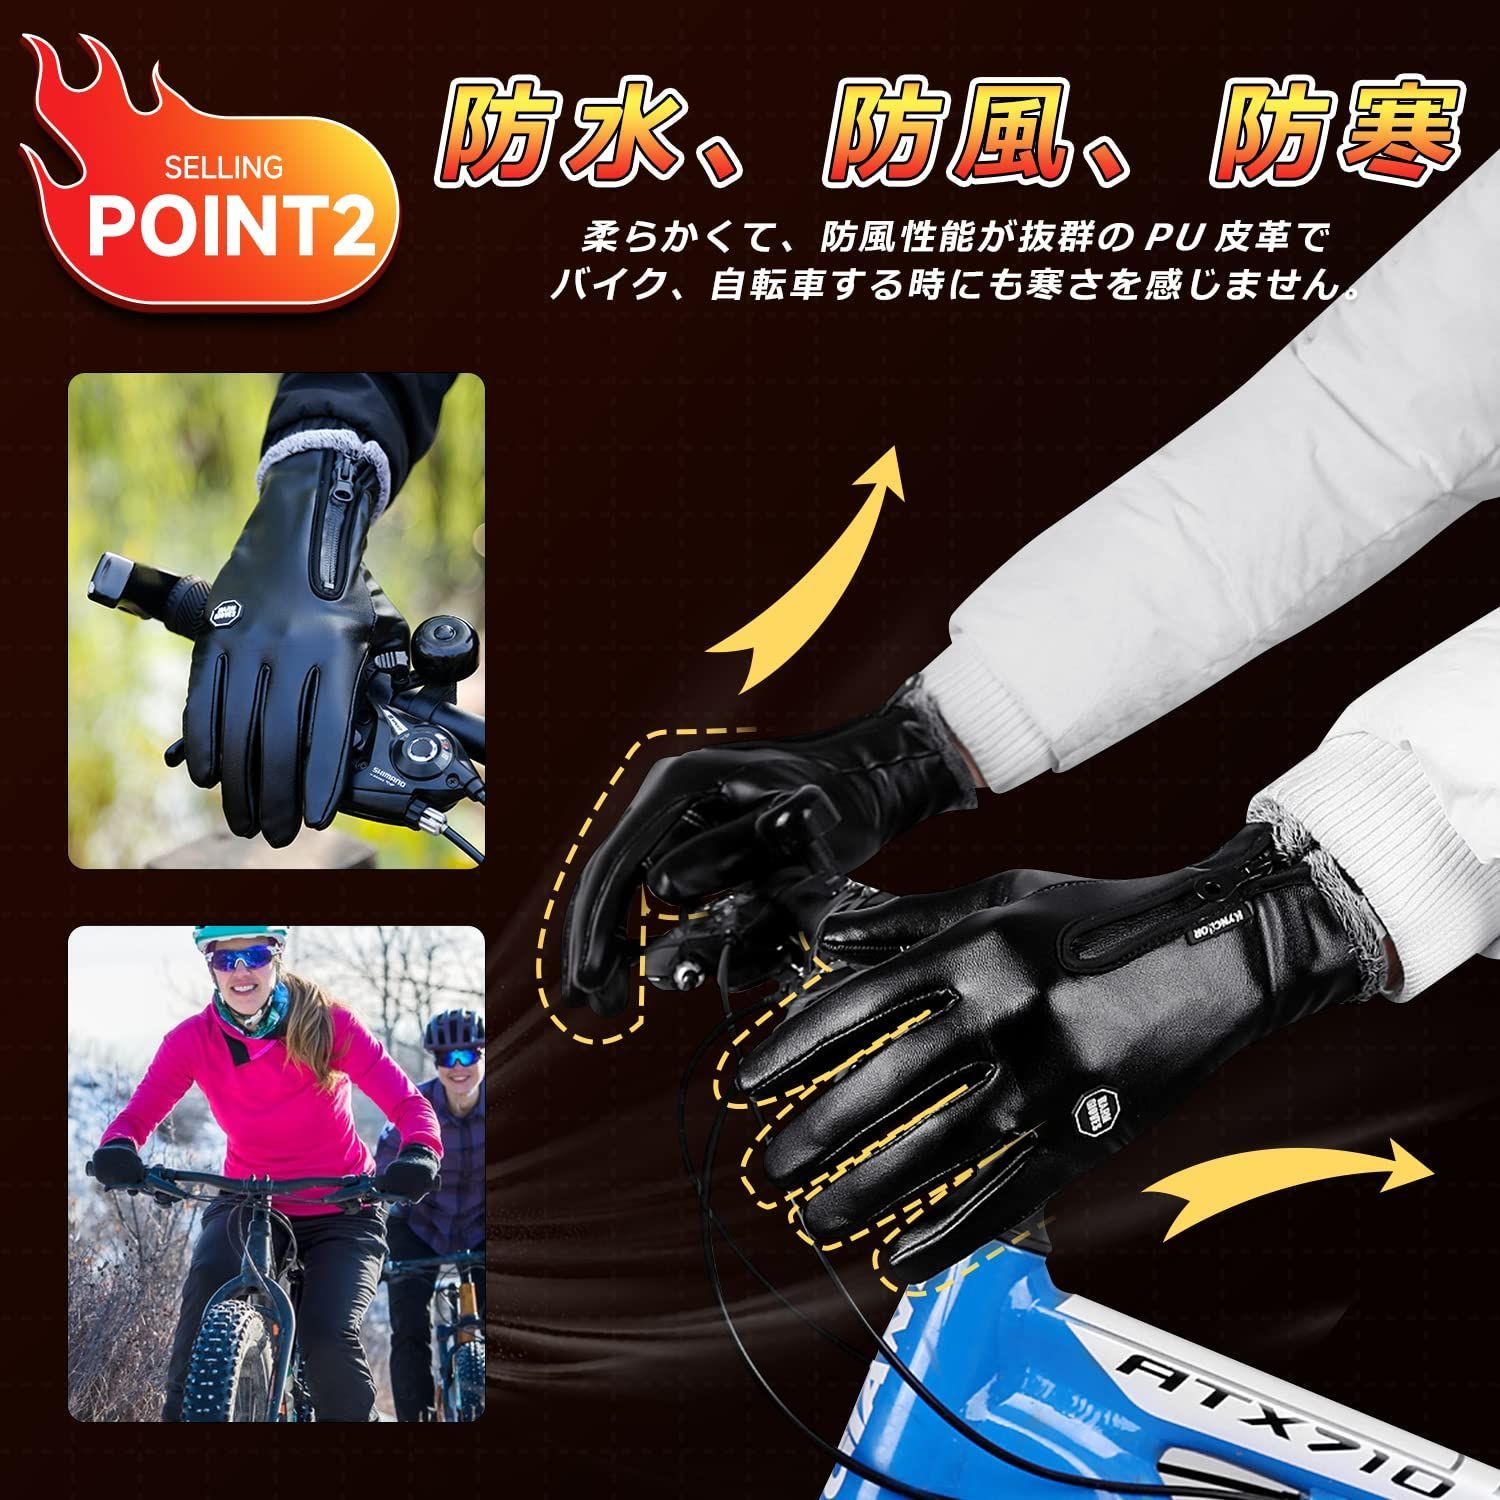 特価商品】バイク手袋 スマホ対応 保温強化 長い袖 防寒 暖かい 防水